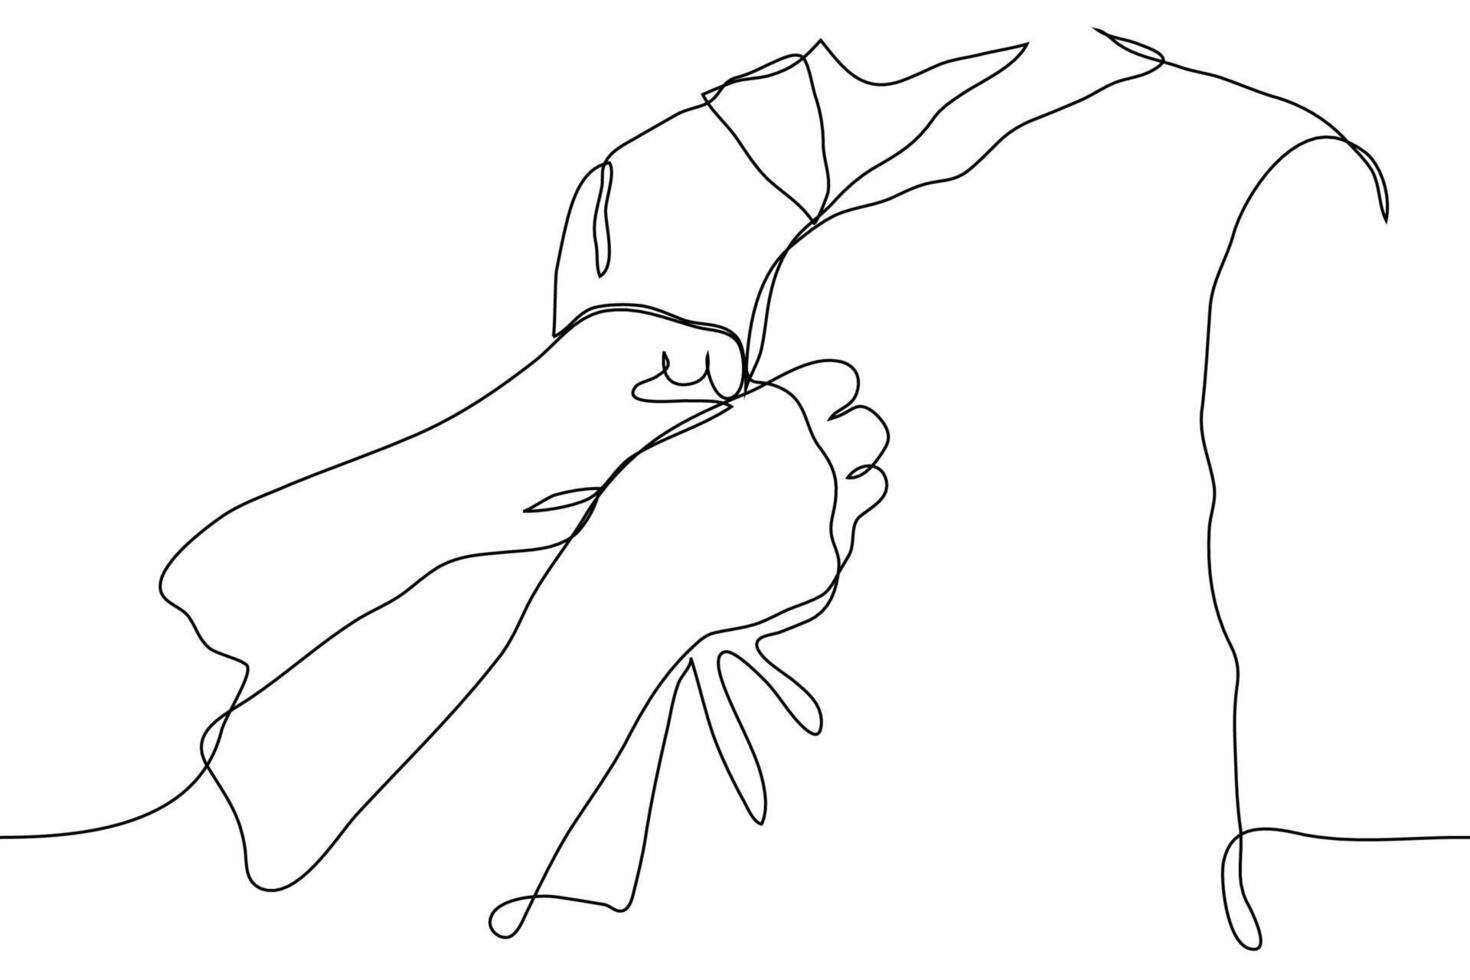 Befestigung Tasten auf ein Hemd zu jemand. einer Linie Zeichnung von einer Person Hand Knöpfen das Tasten auf eines anderen Shirt. Hilfe Konzept zum deaktiviert Menschen, Menschen mit Behinderungen oder Kinder vektor